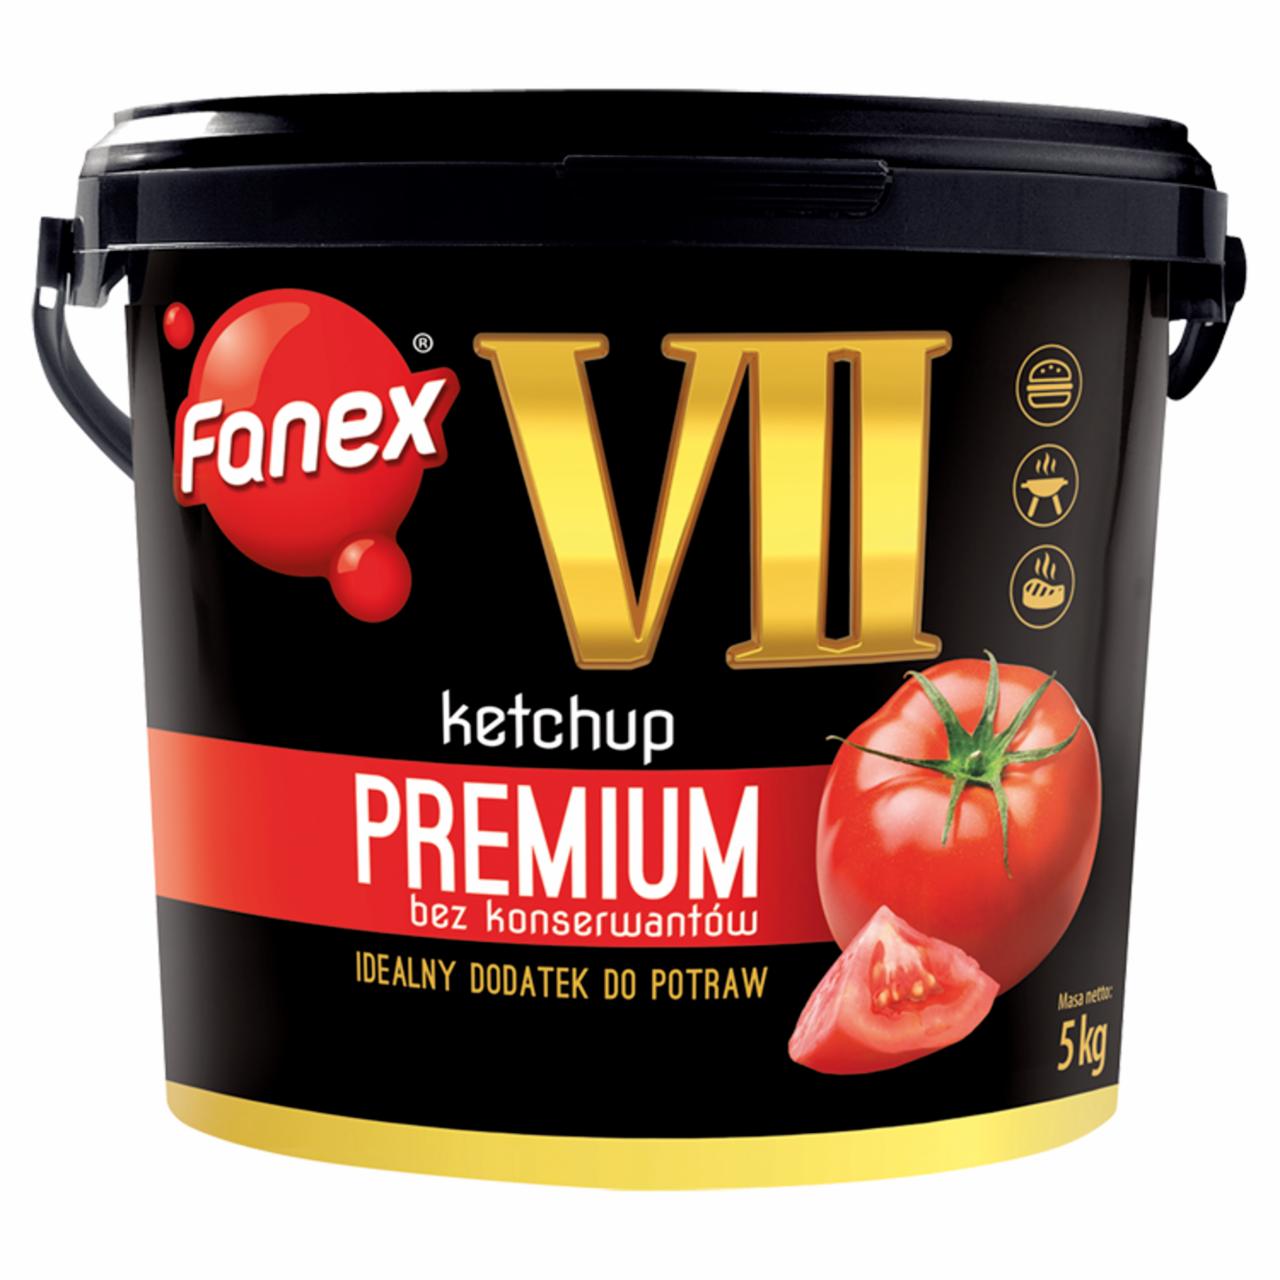 Zdjęcia - Fanex VII Ketchup premium bez konserwantów 5 kg